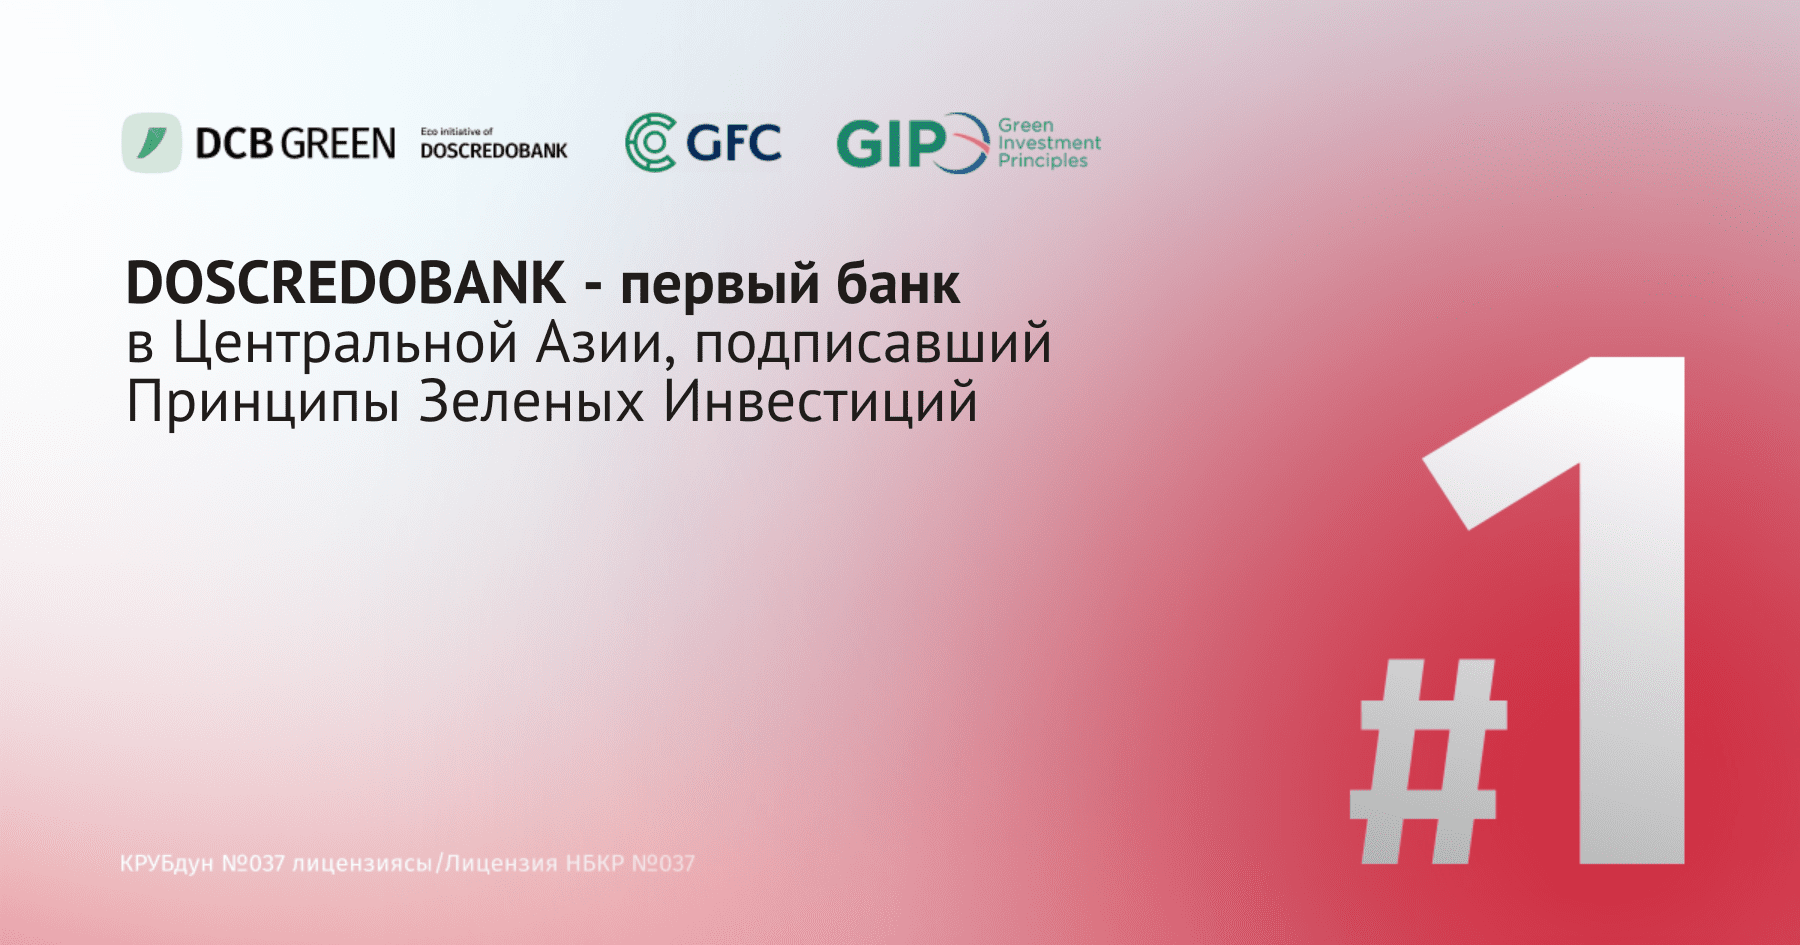 DOSCREDOBANK – первый банк в Центральной Азии, подписавший Принципы зеленых инвестиций